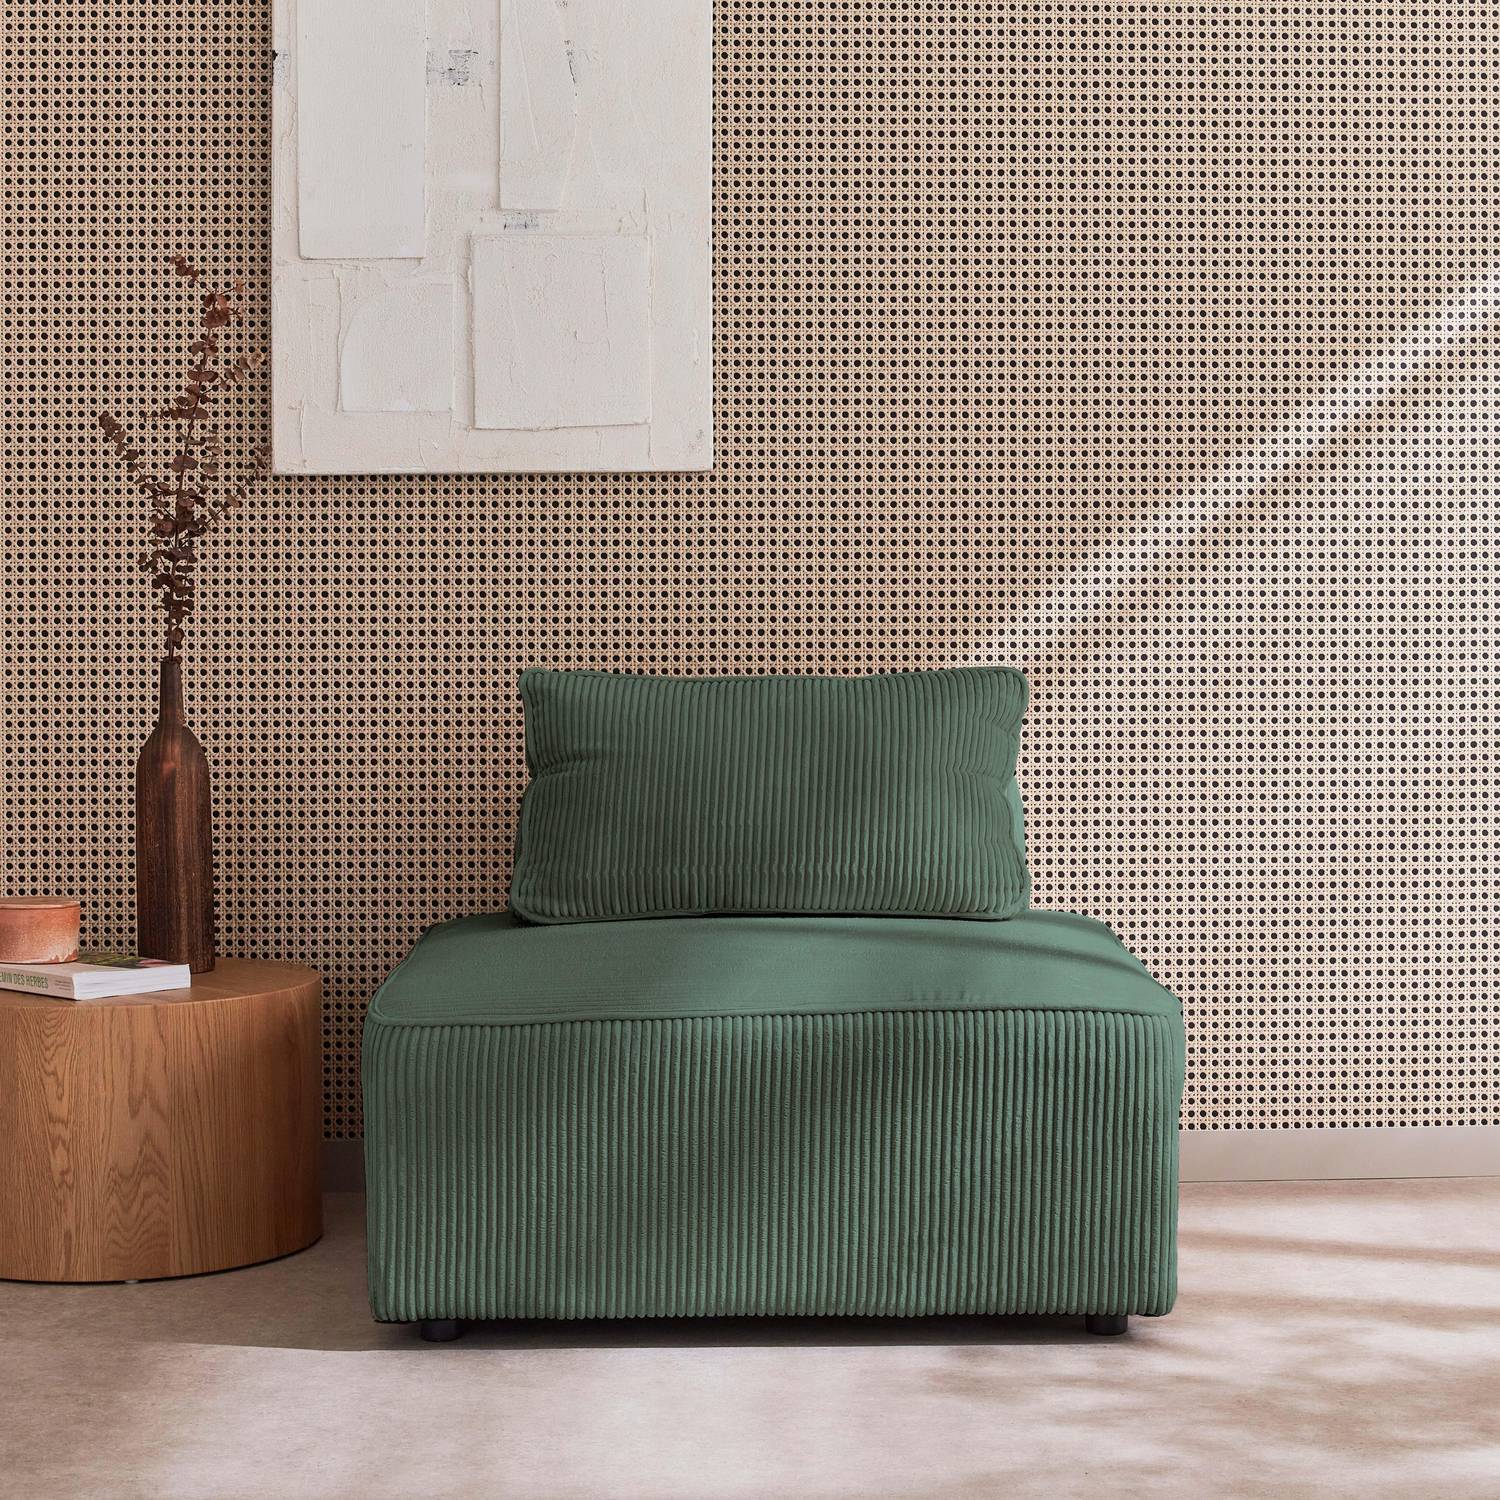 Sessel ohne Armlehne mit grünem Cordbezug für ein modulares Sofa Photo1